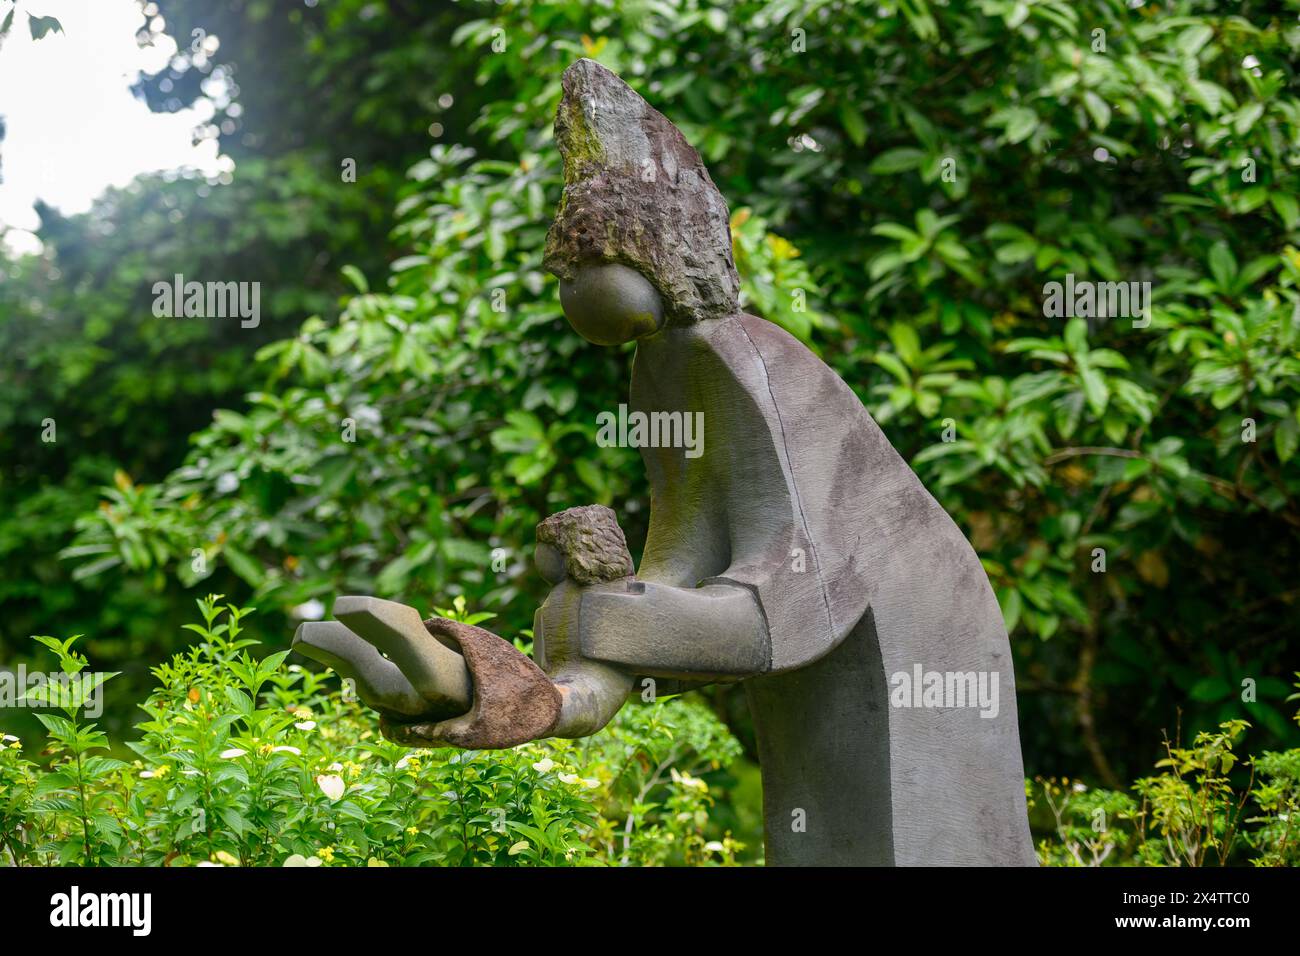 Swing Me Mama statue by Dominic Benhura at Singapore Botanic Gardens, Singapore Stock Photo